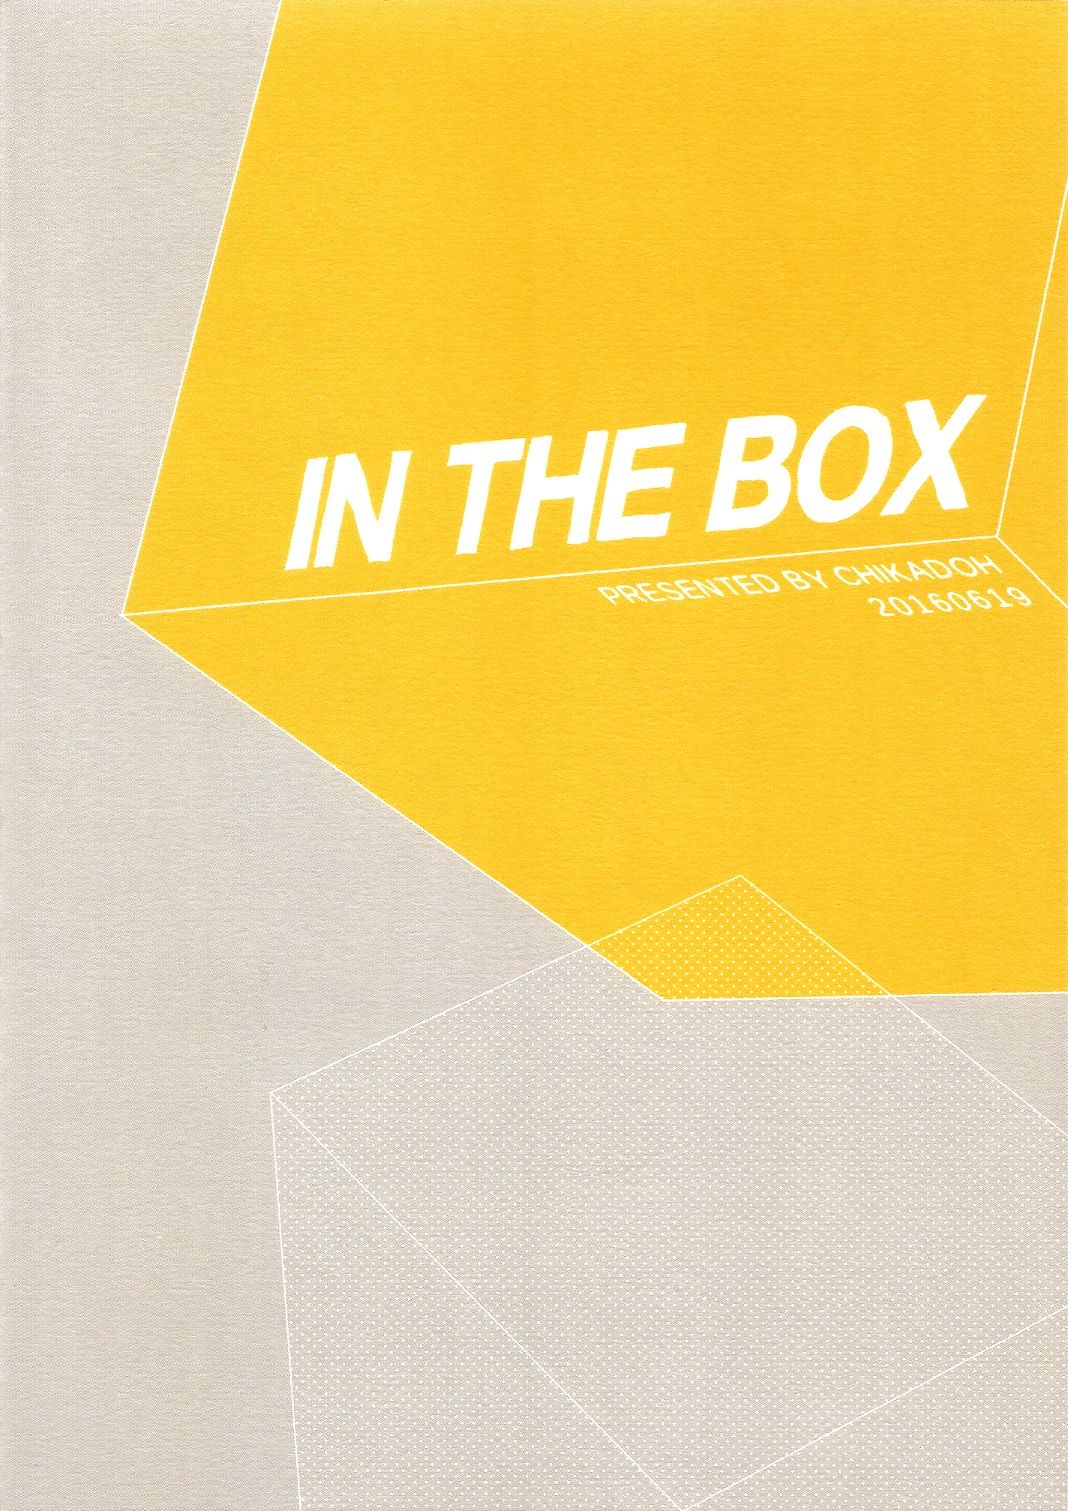 [地下堂 (ハルコ)] IN THE BOX (亜人)